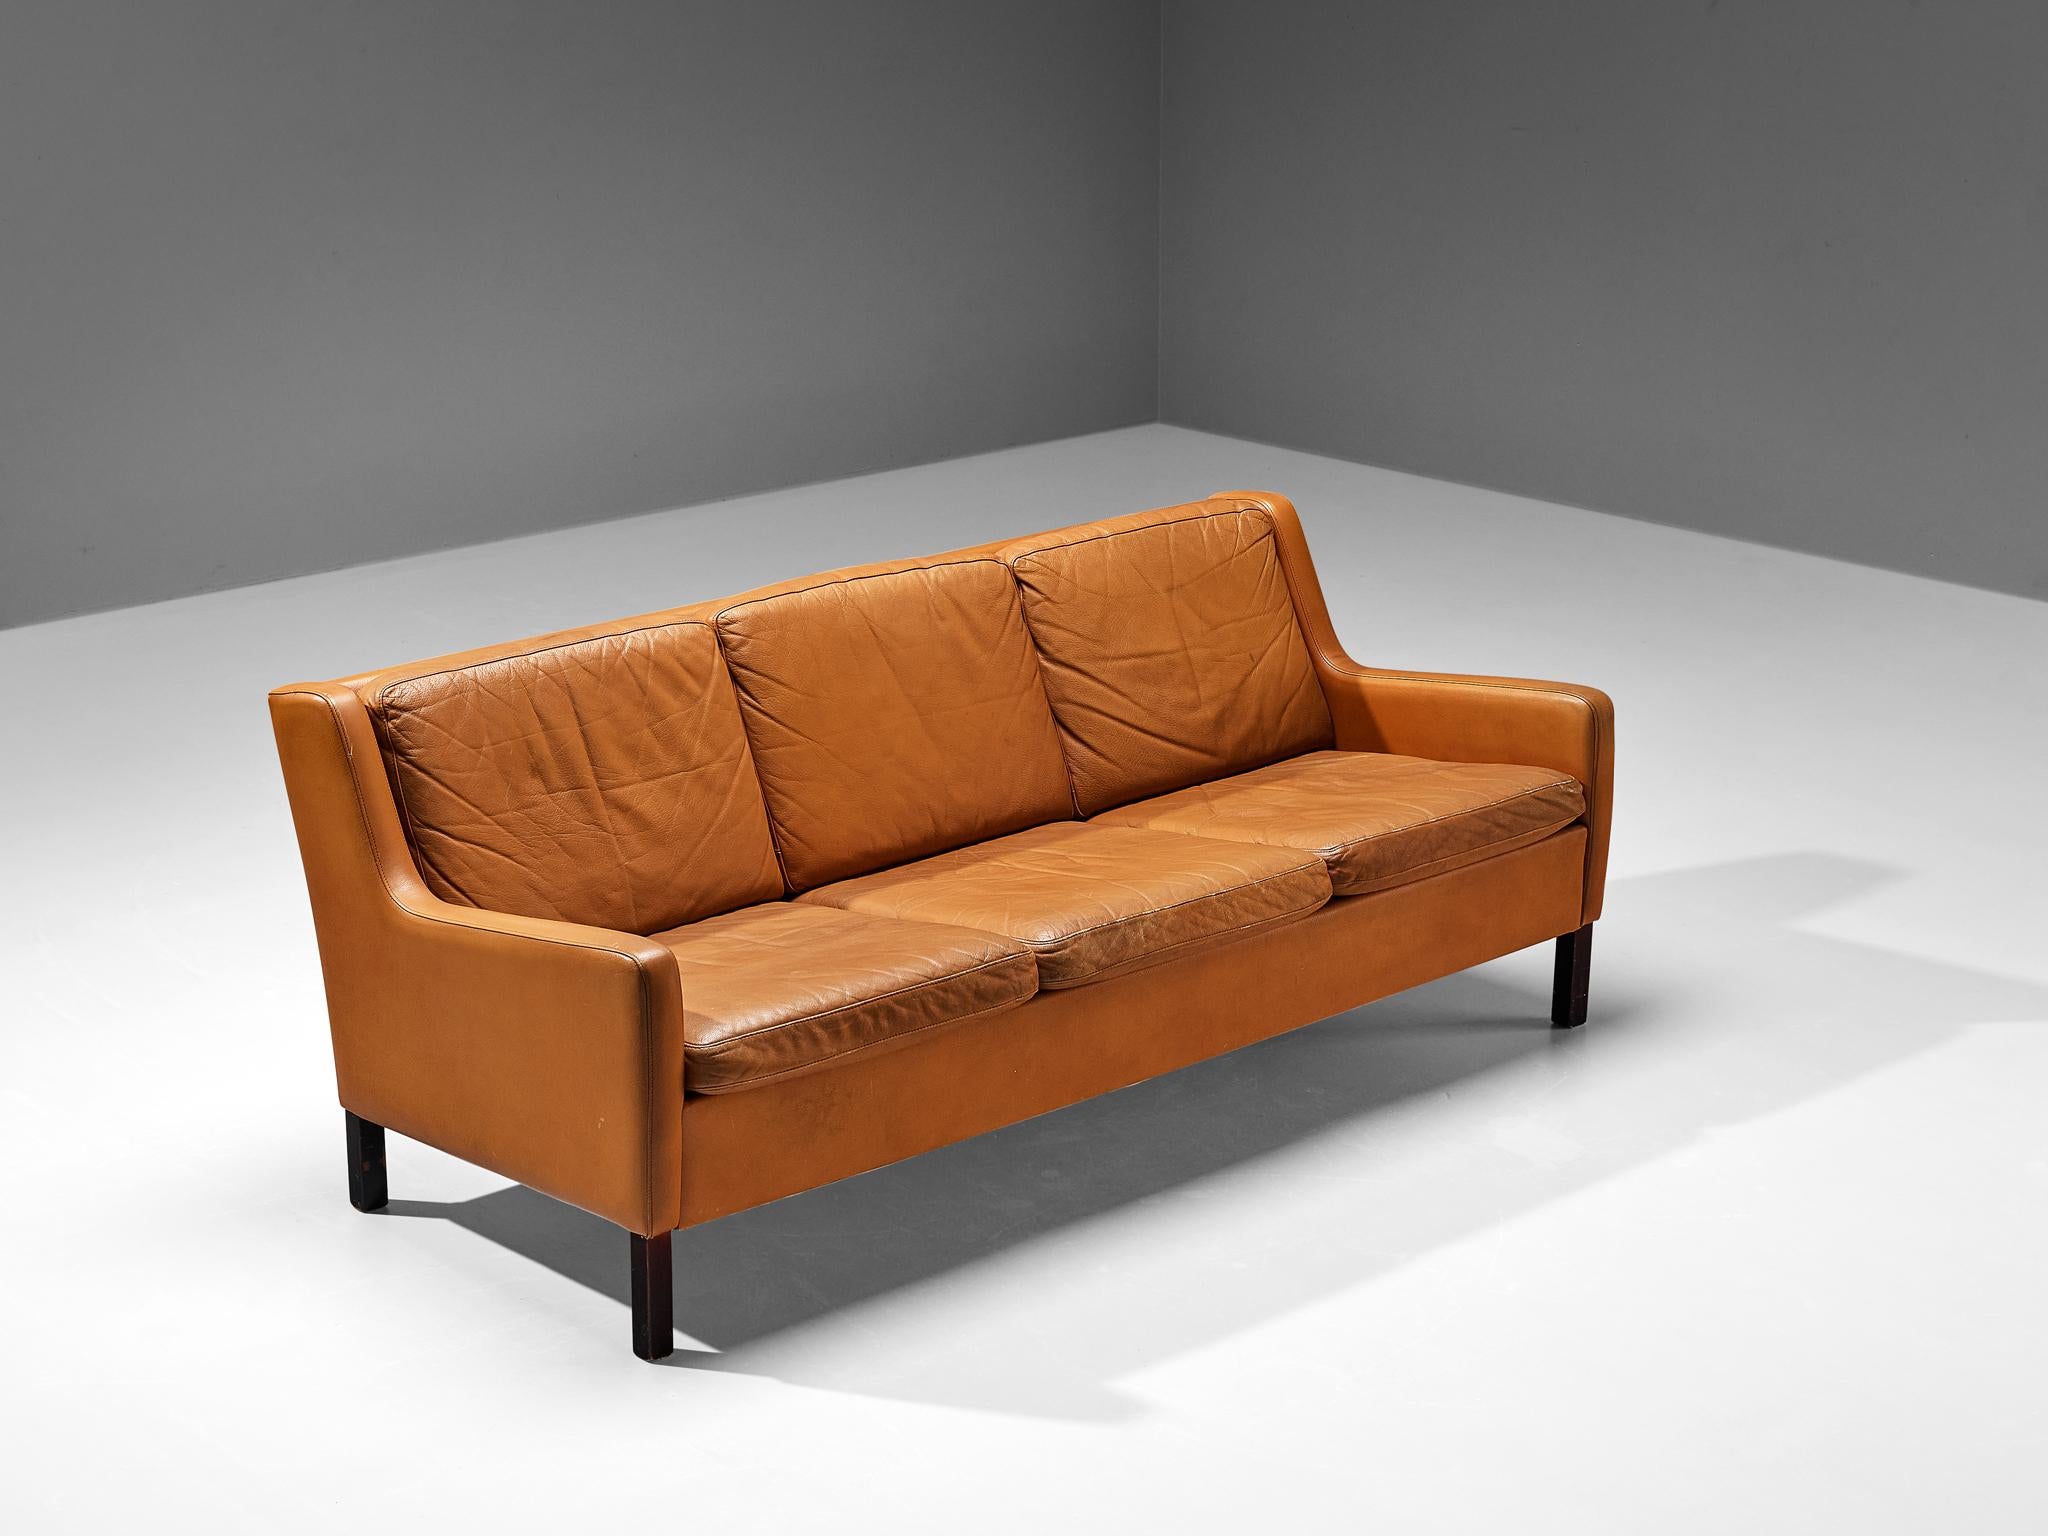 Canapé à trois places, cuir cognac à orange et chêne, Danemark, vers 1960. 

Ce canapé trois places, modeste et confortable, présente des traits du design de Borg. La palette de couleurs du cuir orange-cognac et les pieds teintés foncés créent une